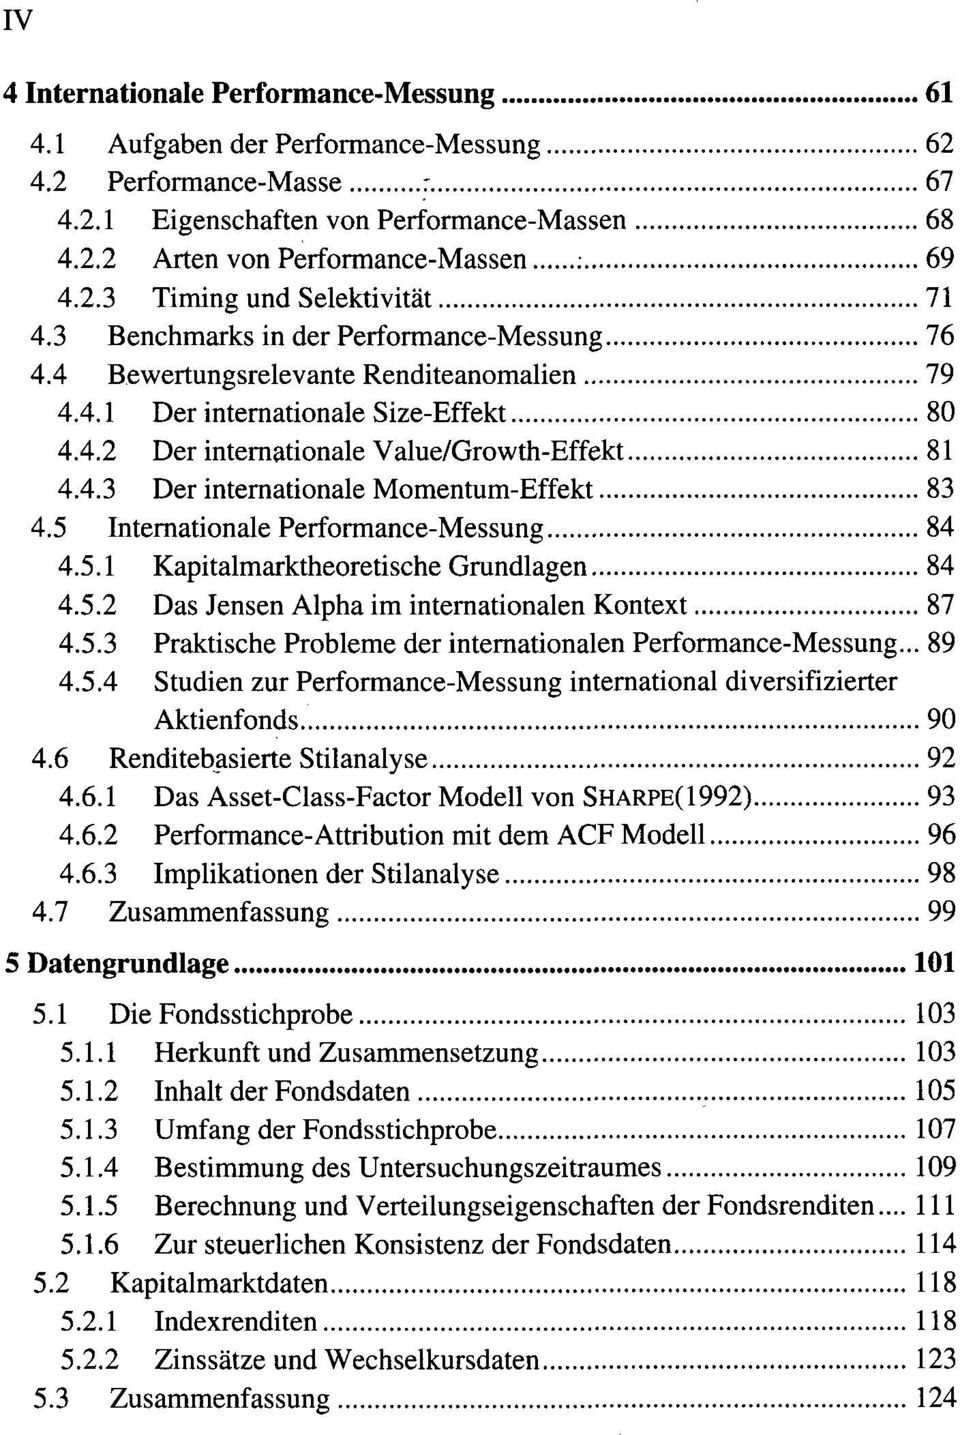 5 Internationale Performance-Messung 84 4.5.1 Kapitalmarktheoretische Grundlagen 84 4.5.2 Das Jensen Alpha im internationalen Kontext 87 4.5.3 Praktische Probleme der internationalen Performance-Messung.